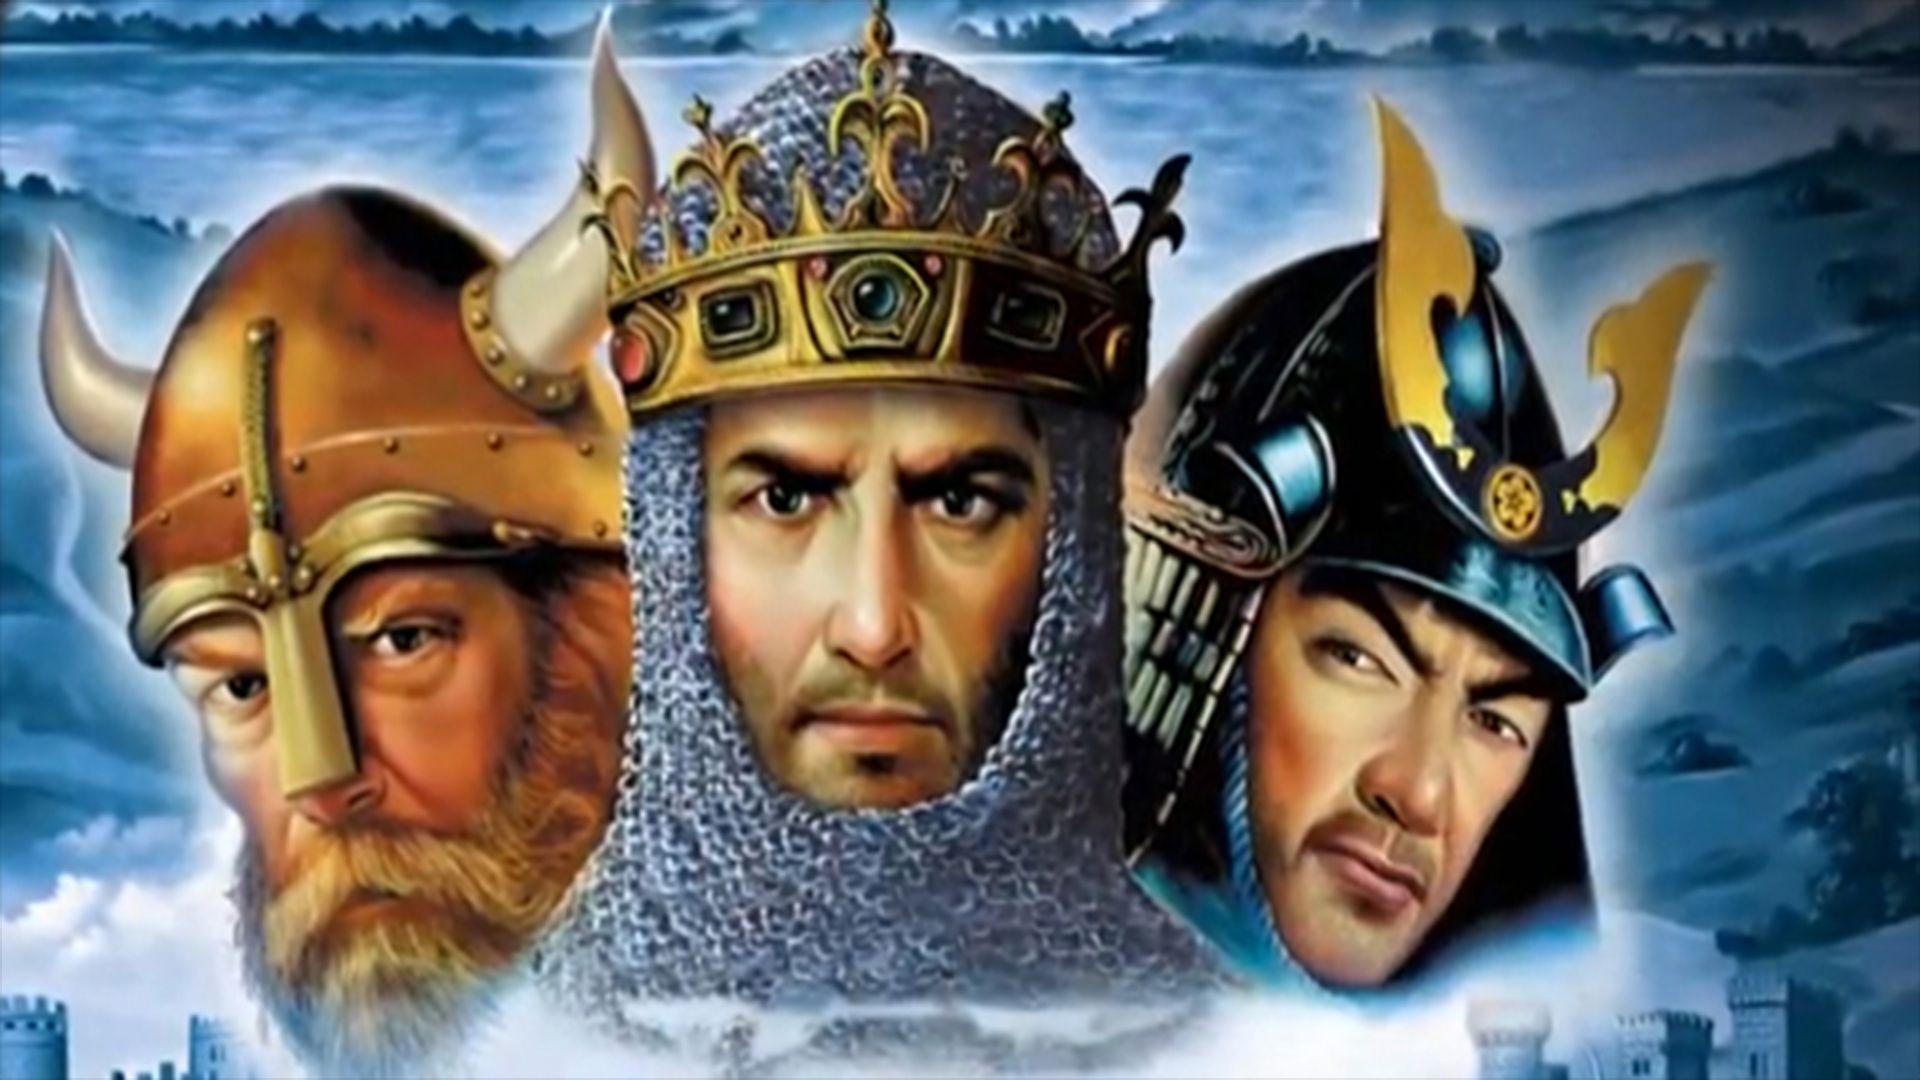 Age Of Empires II HD Computer Wallpaper, Desktop Background